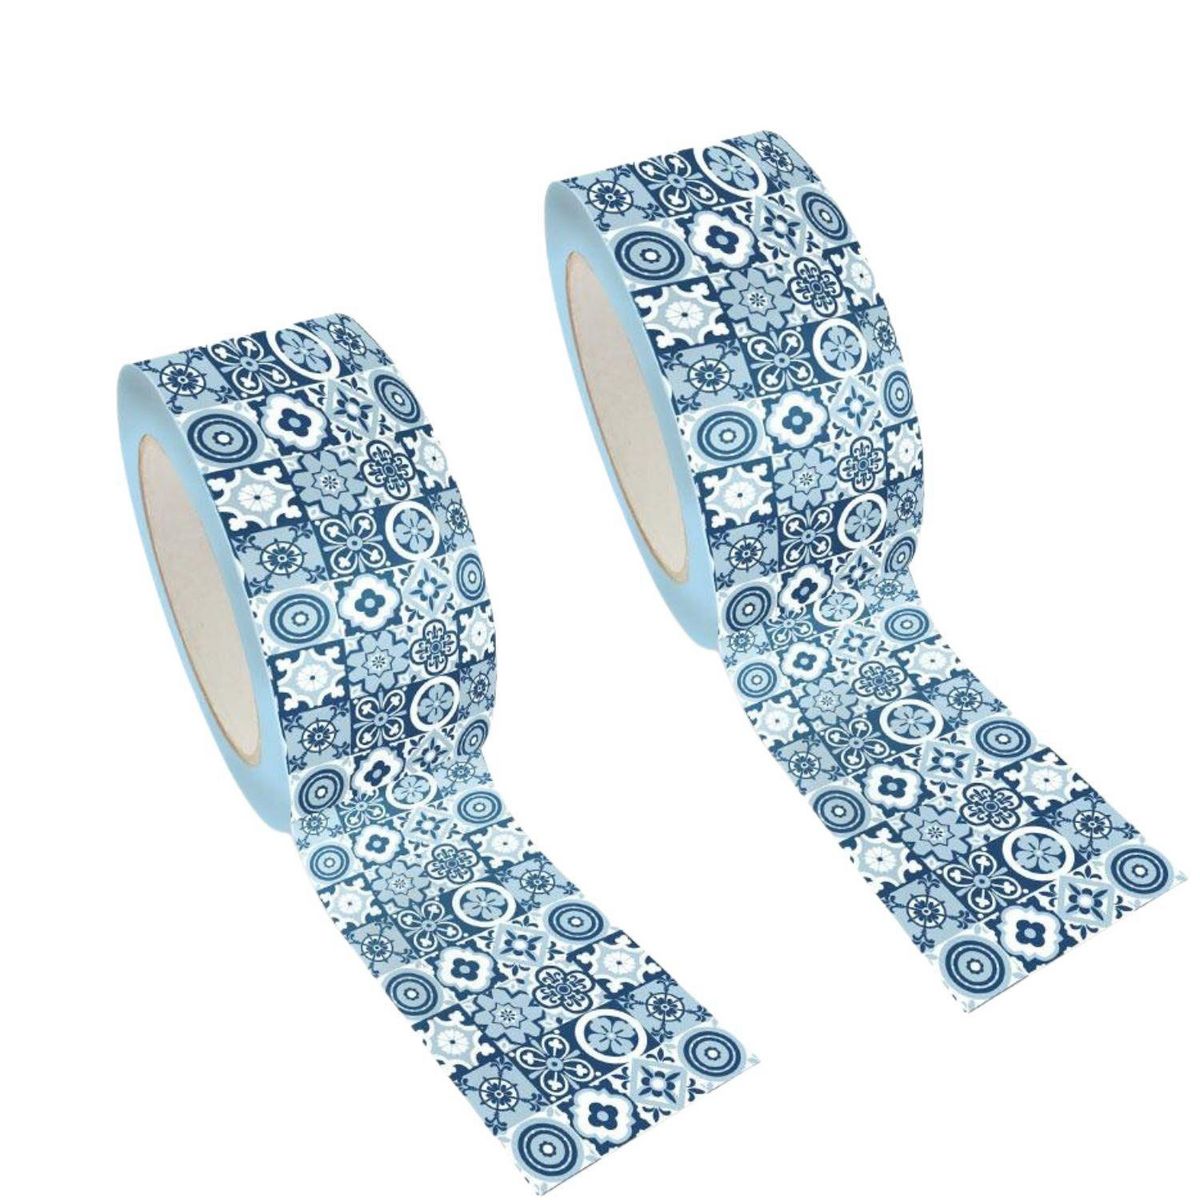 Graine créative 2 masking tapes XL bleu 4,8 cm x 8 m - Carrelage